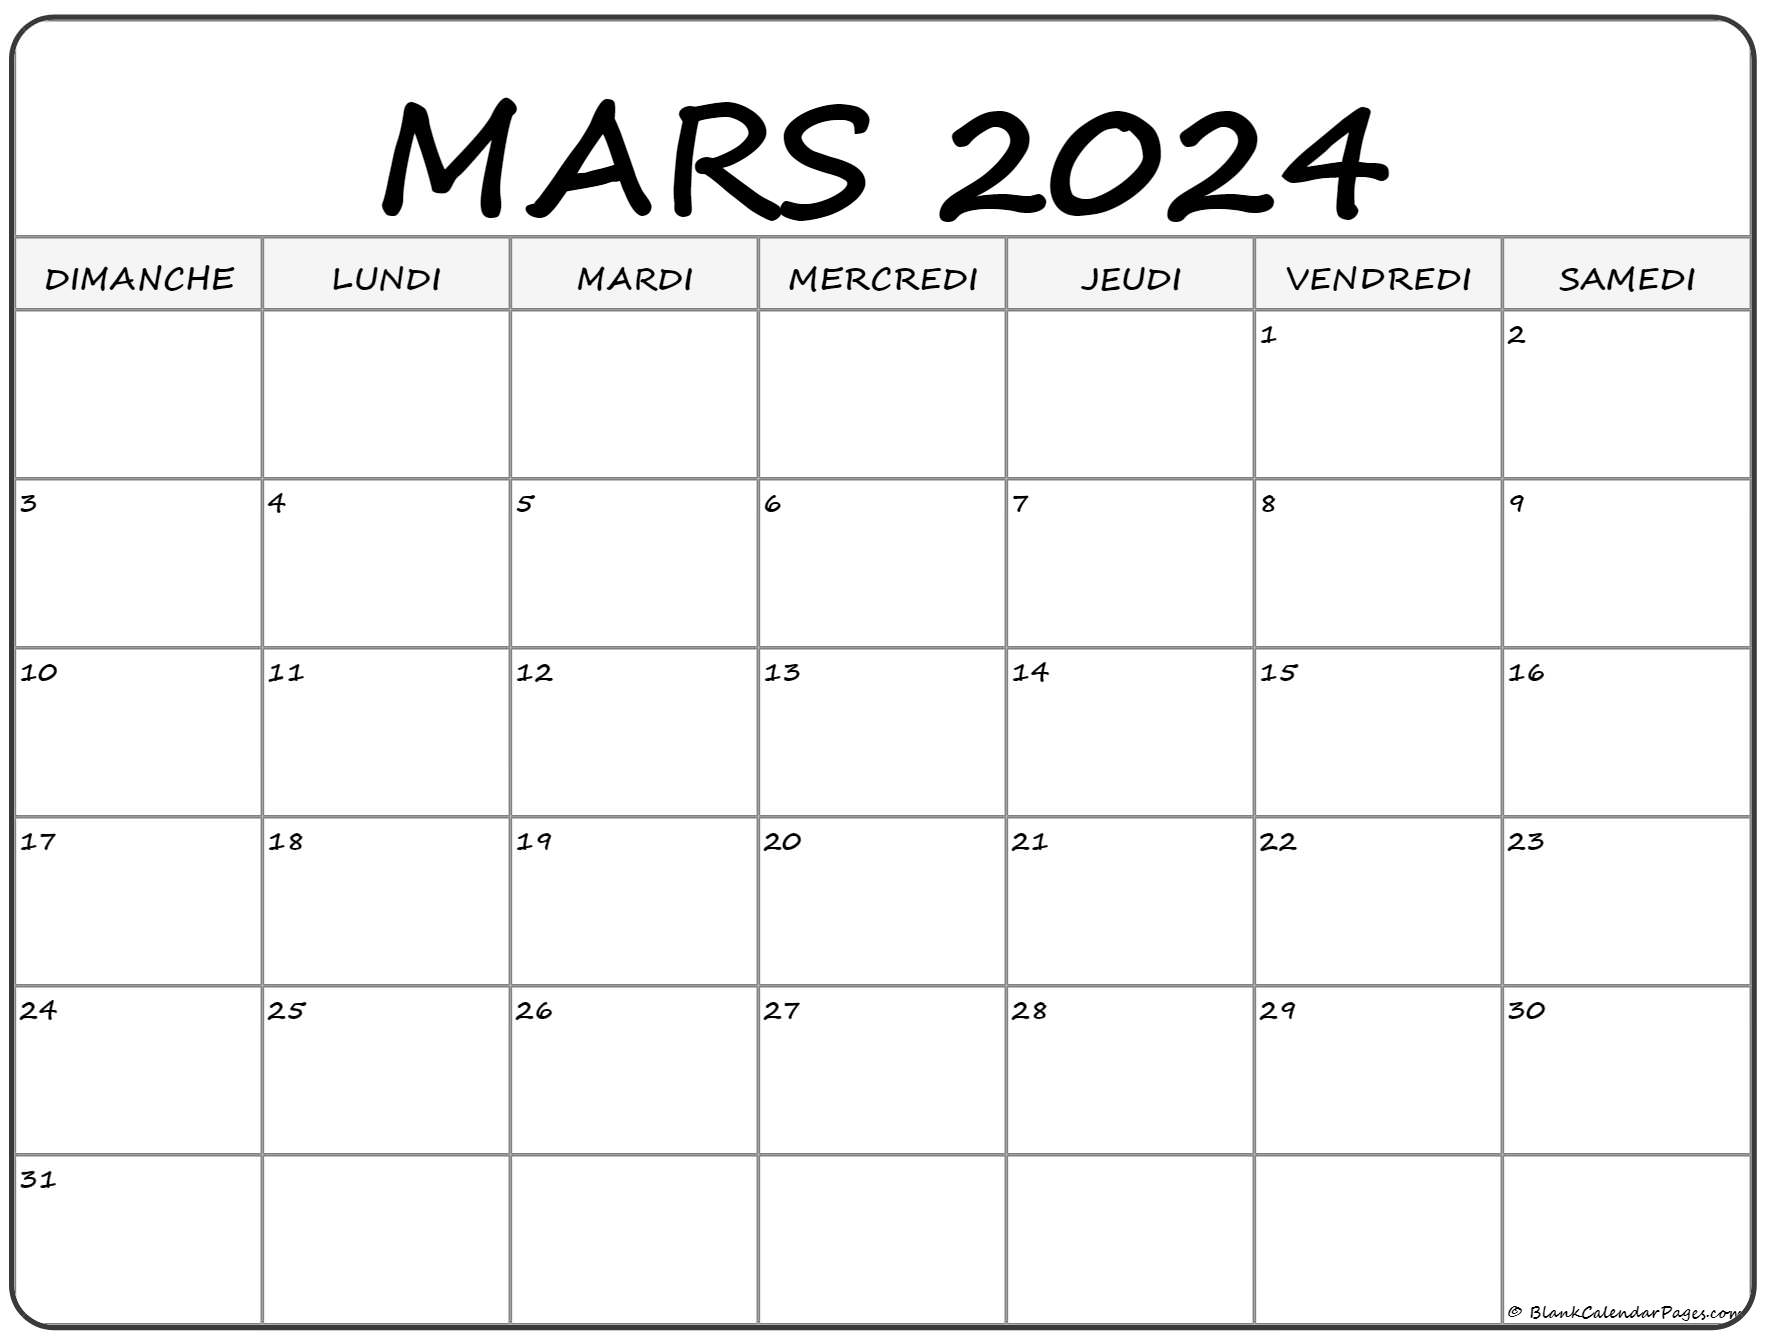 Calendrier Fevrier Mars 2022 mars 2022 calendrier imprimable | Calendrier gratuit